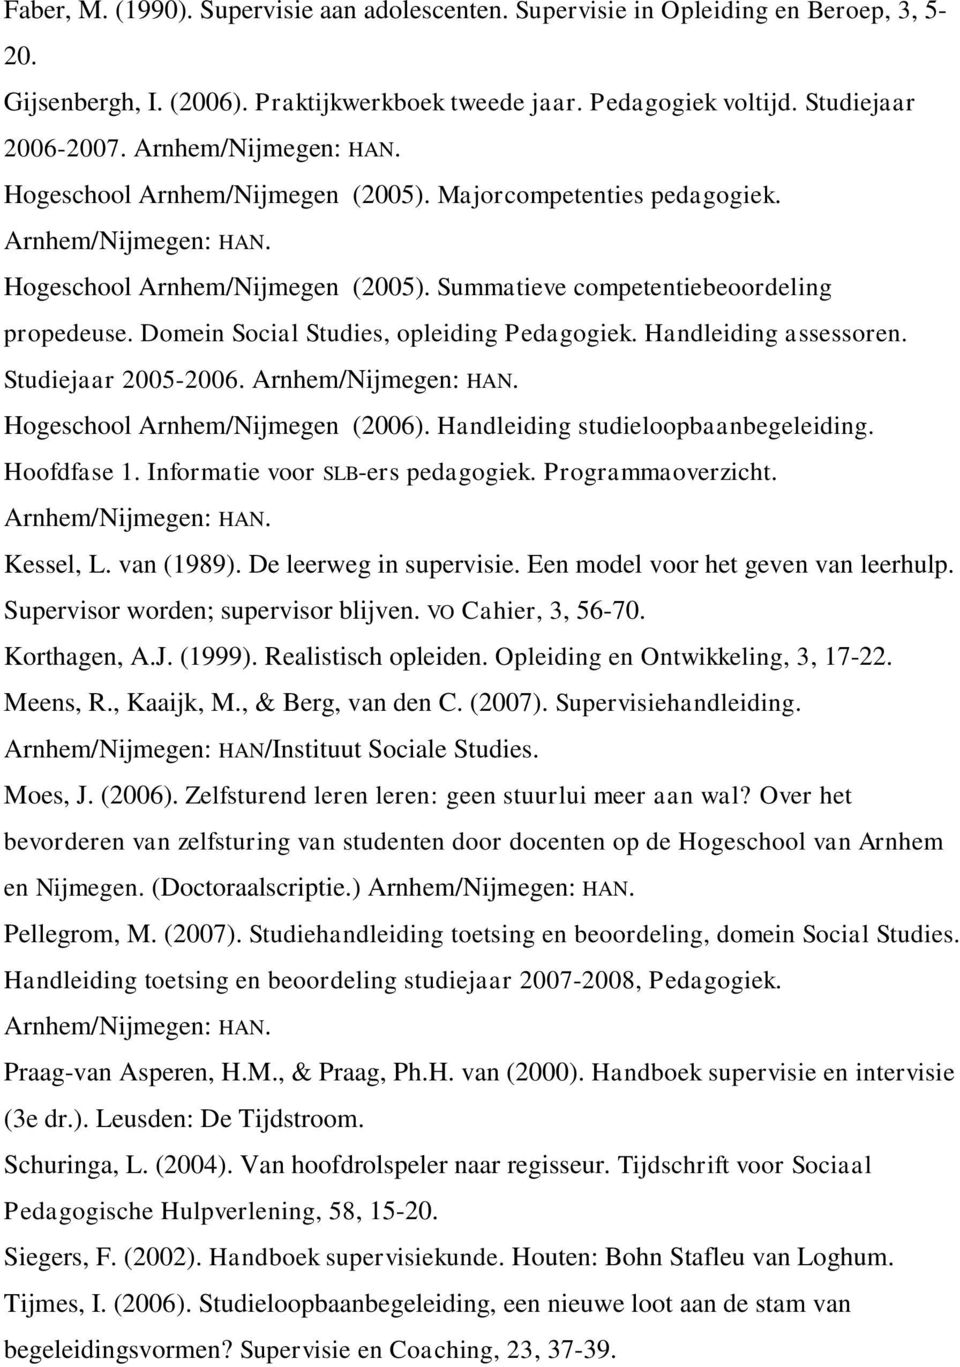 Domein Social Studies, opleiding Pedagogiek. Handleiding assessoren. Studiejaar 2005-2006. Arnhem/Nijmegen: HAN. Hogeschool Arnhem/Nijmegen (2006). Handleiding studieloopbaanbegeleiding. Hoofdfase 1.